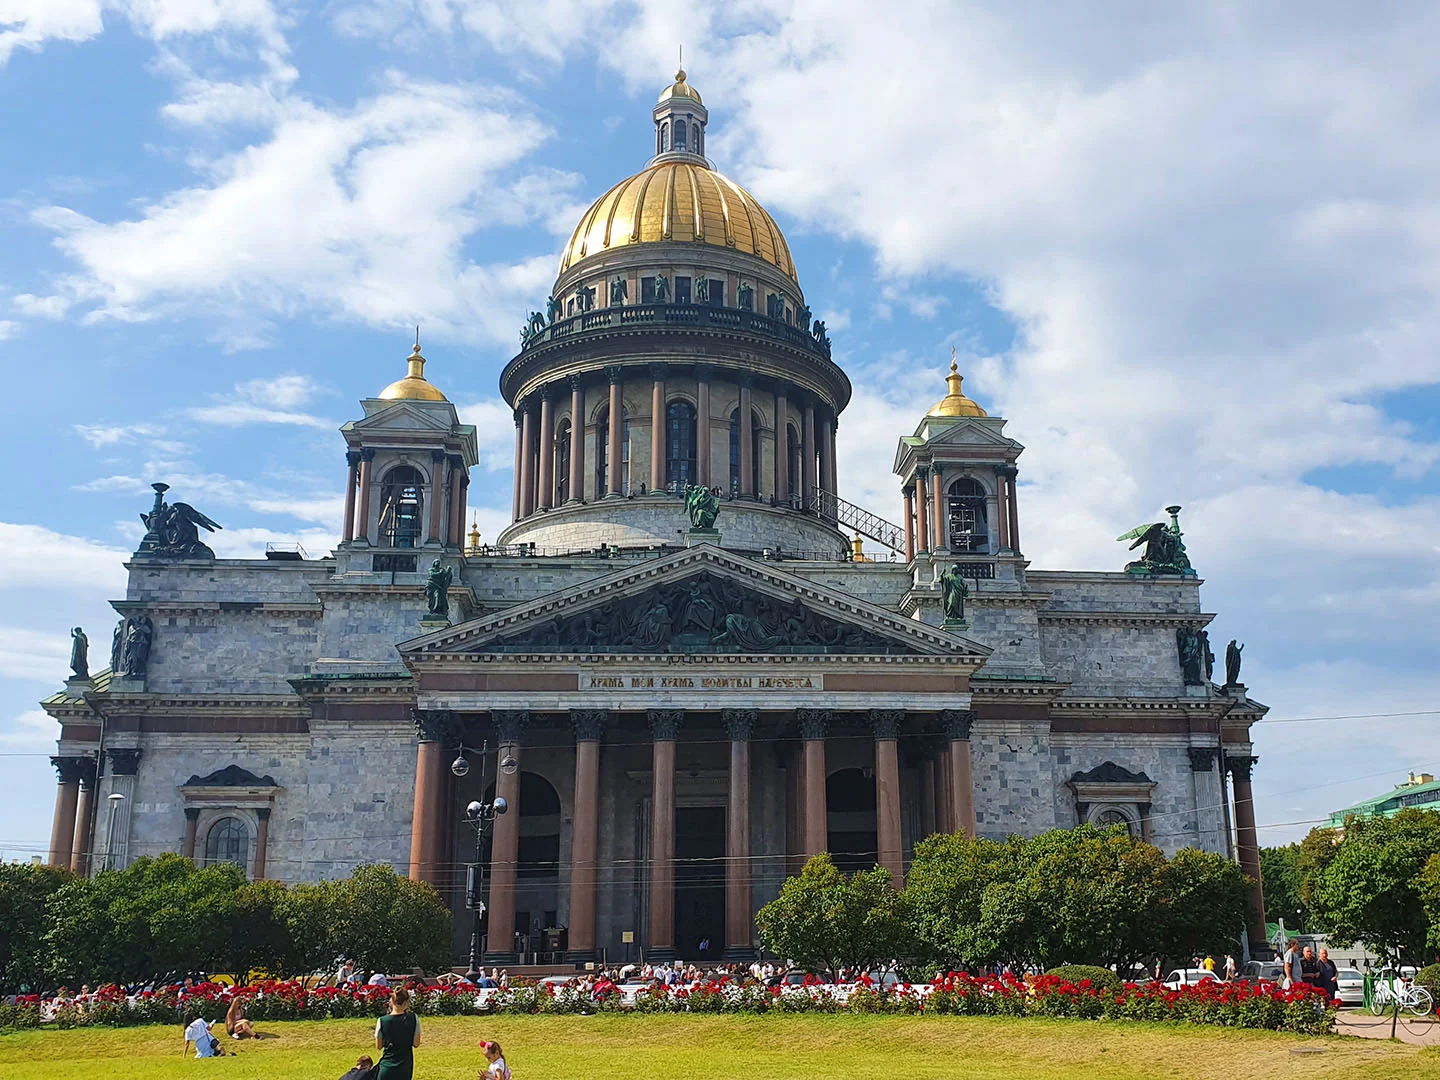 Исаакиевский собор в Петербурге.